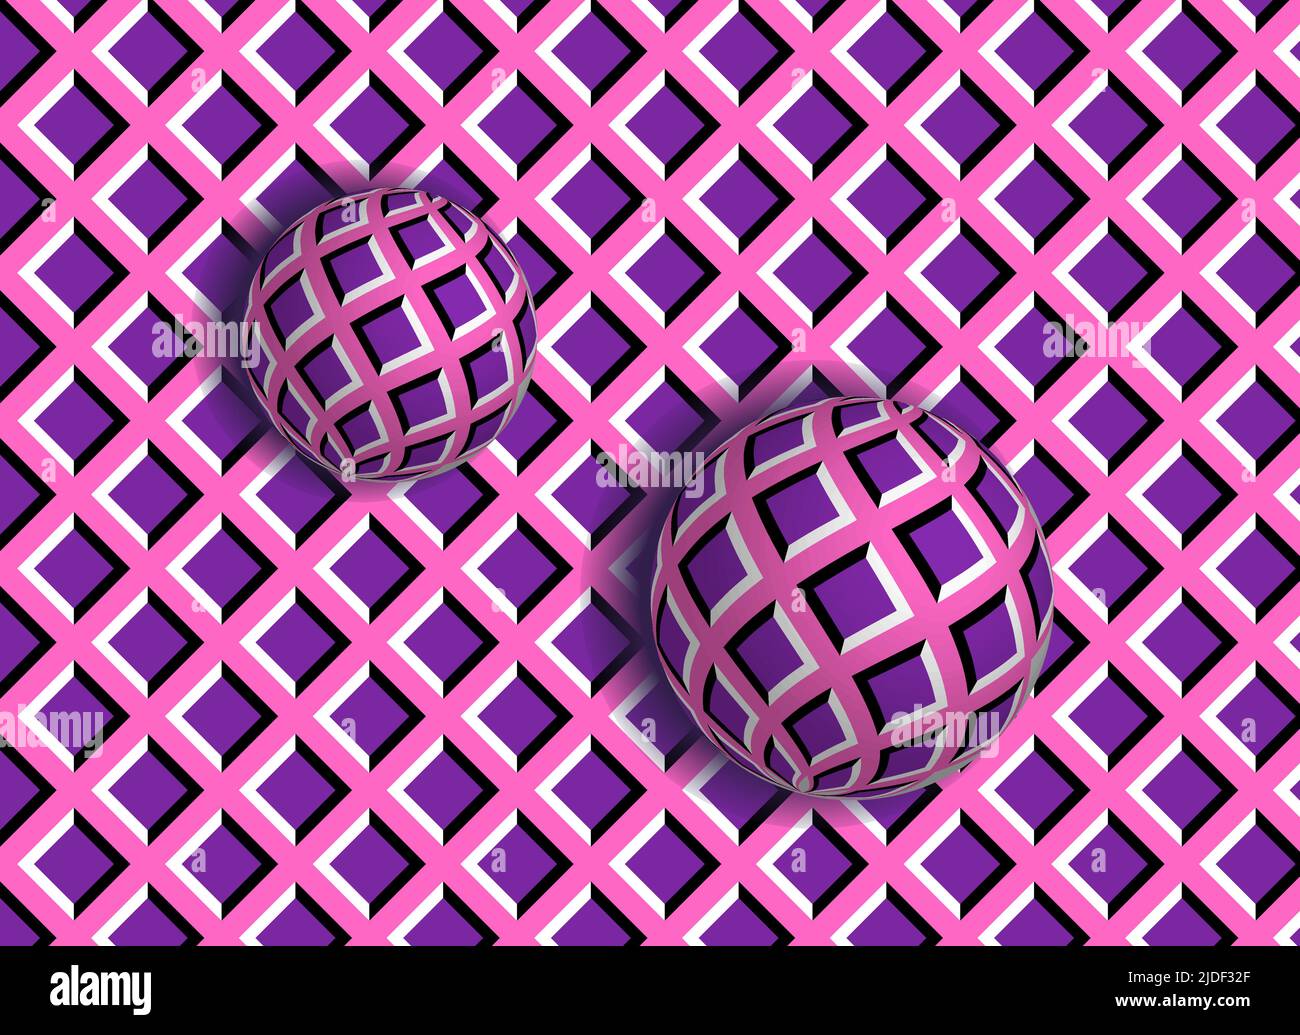 Abstract 3D Bewegung optische Illusion mit beweglichen Kugeln in lila Farben Stock Vektor